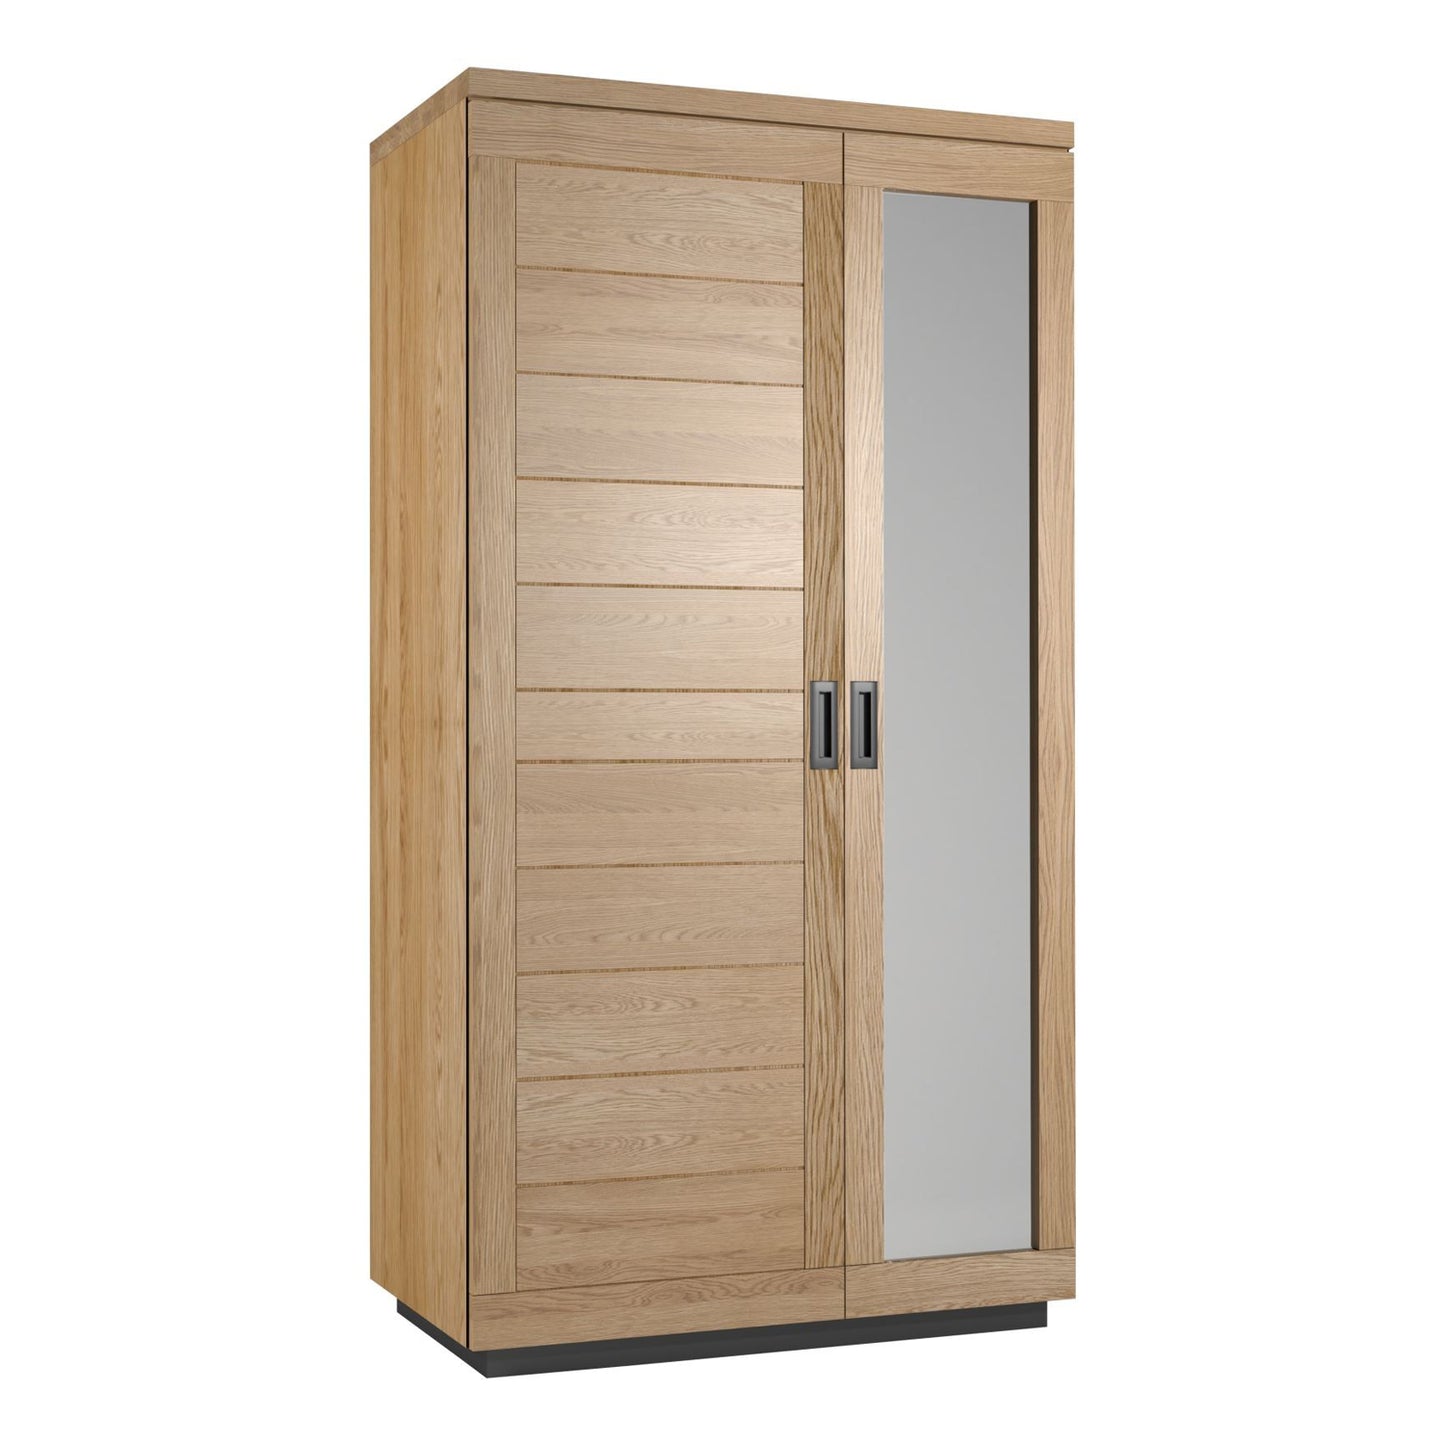 Elsworthy Oak Wardrobe - 2 Door Double